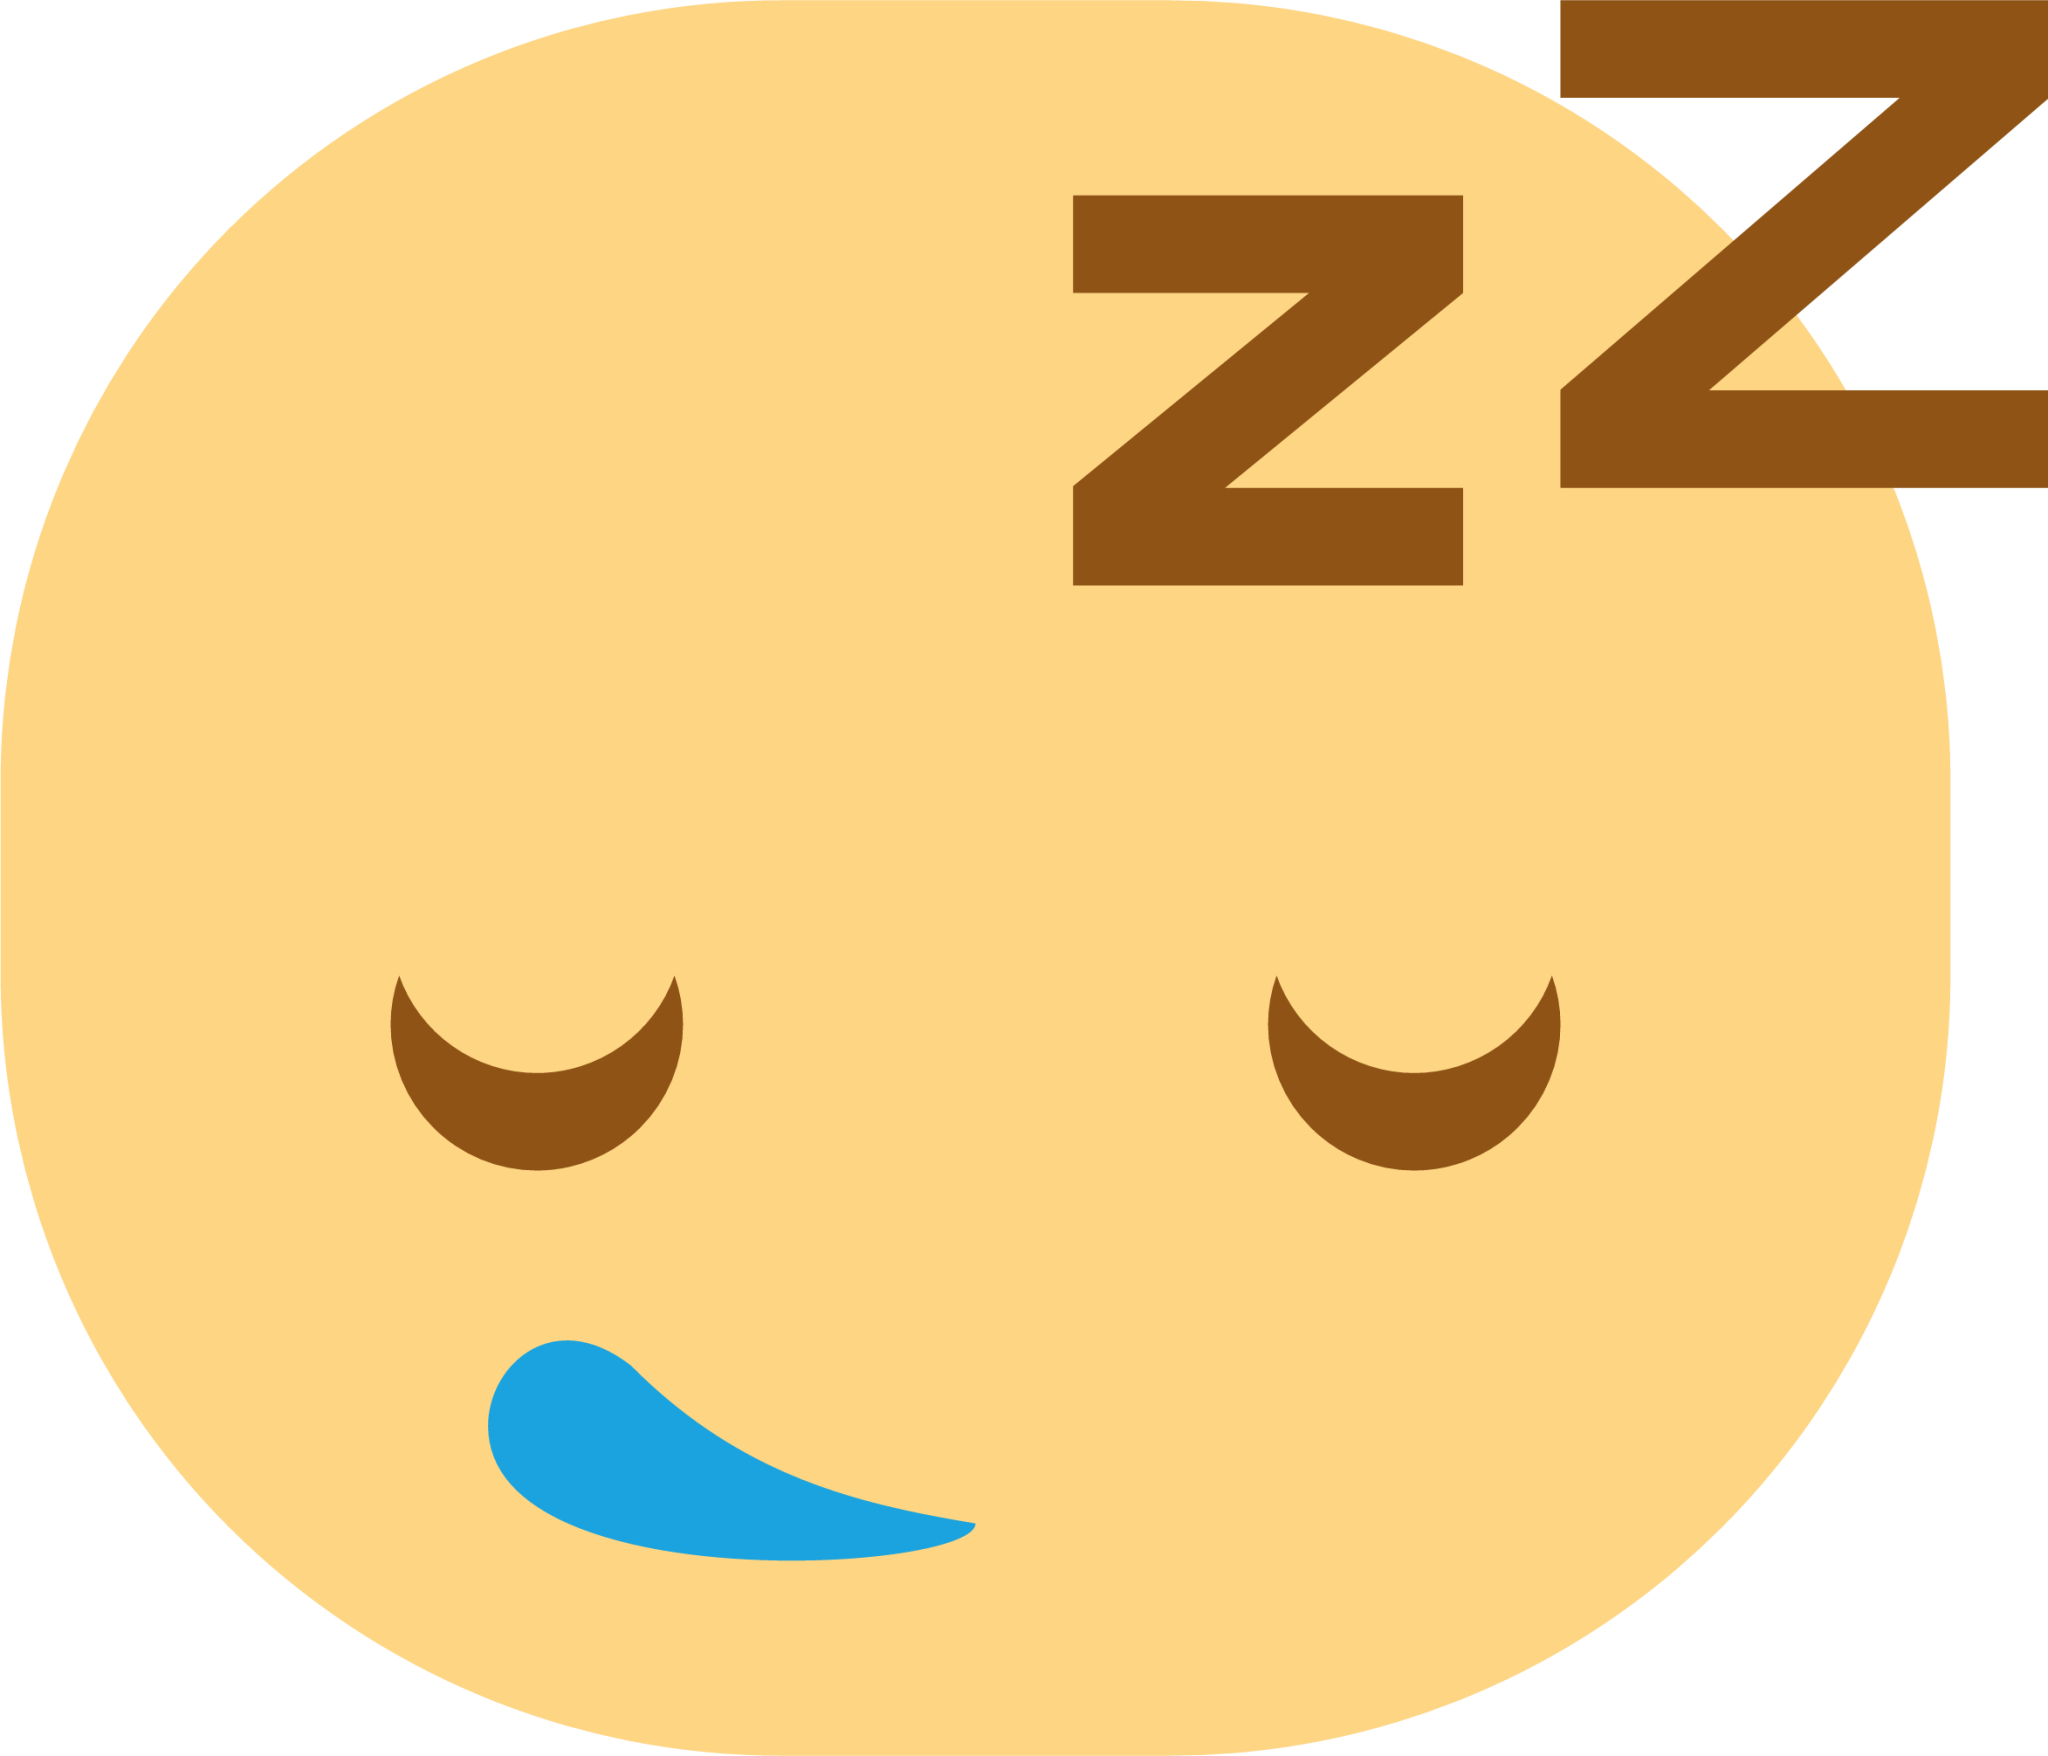 face sleeping icon